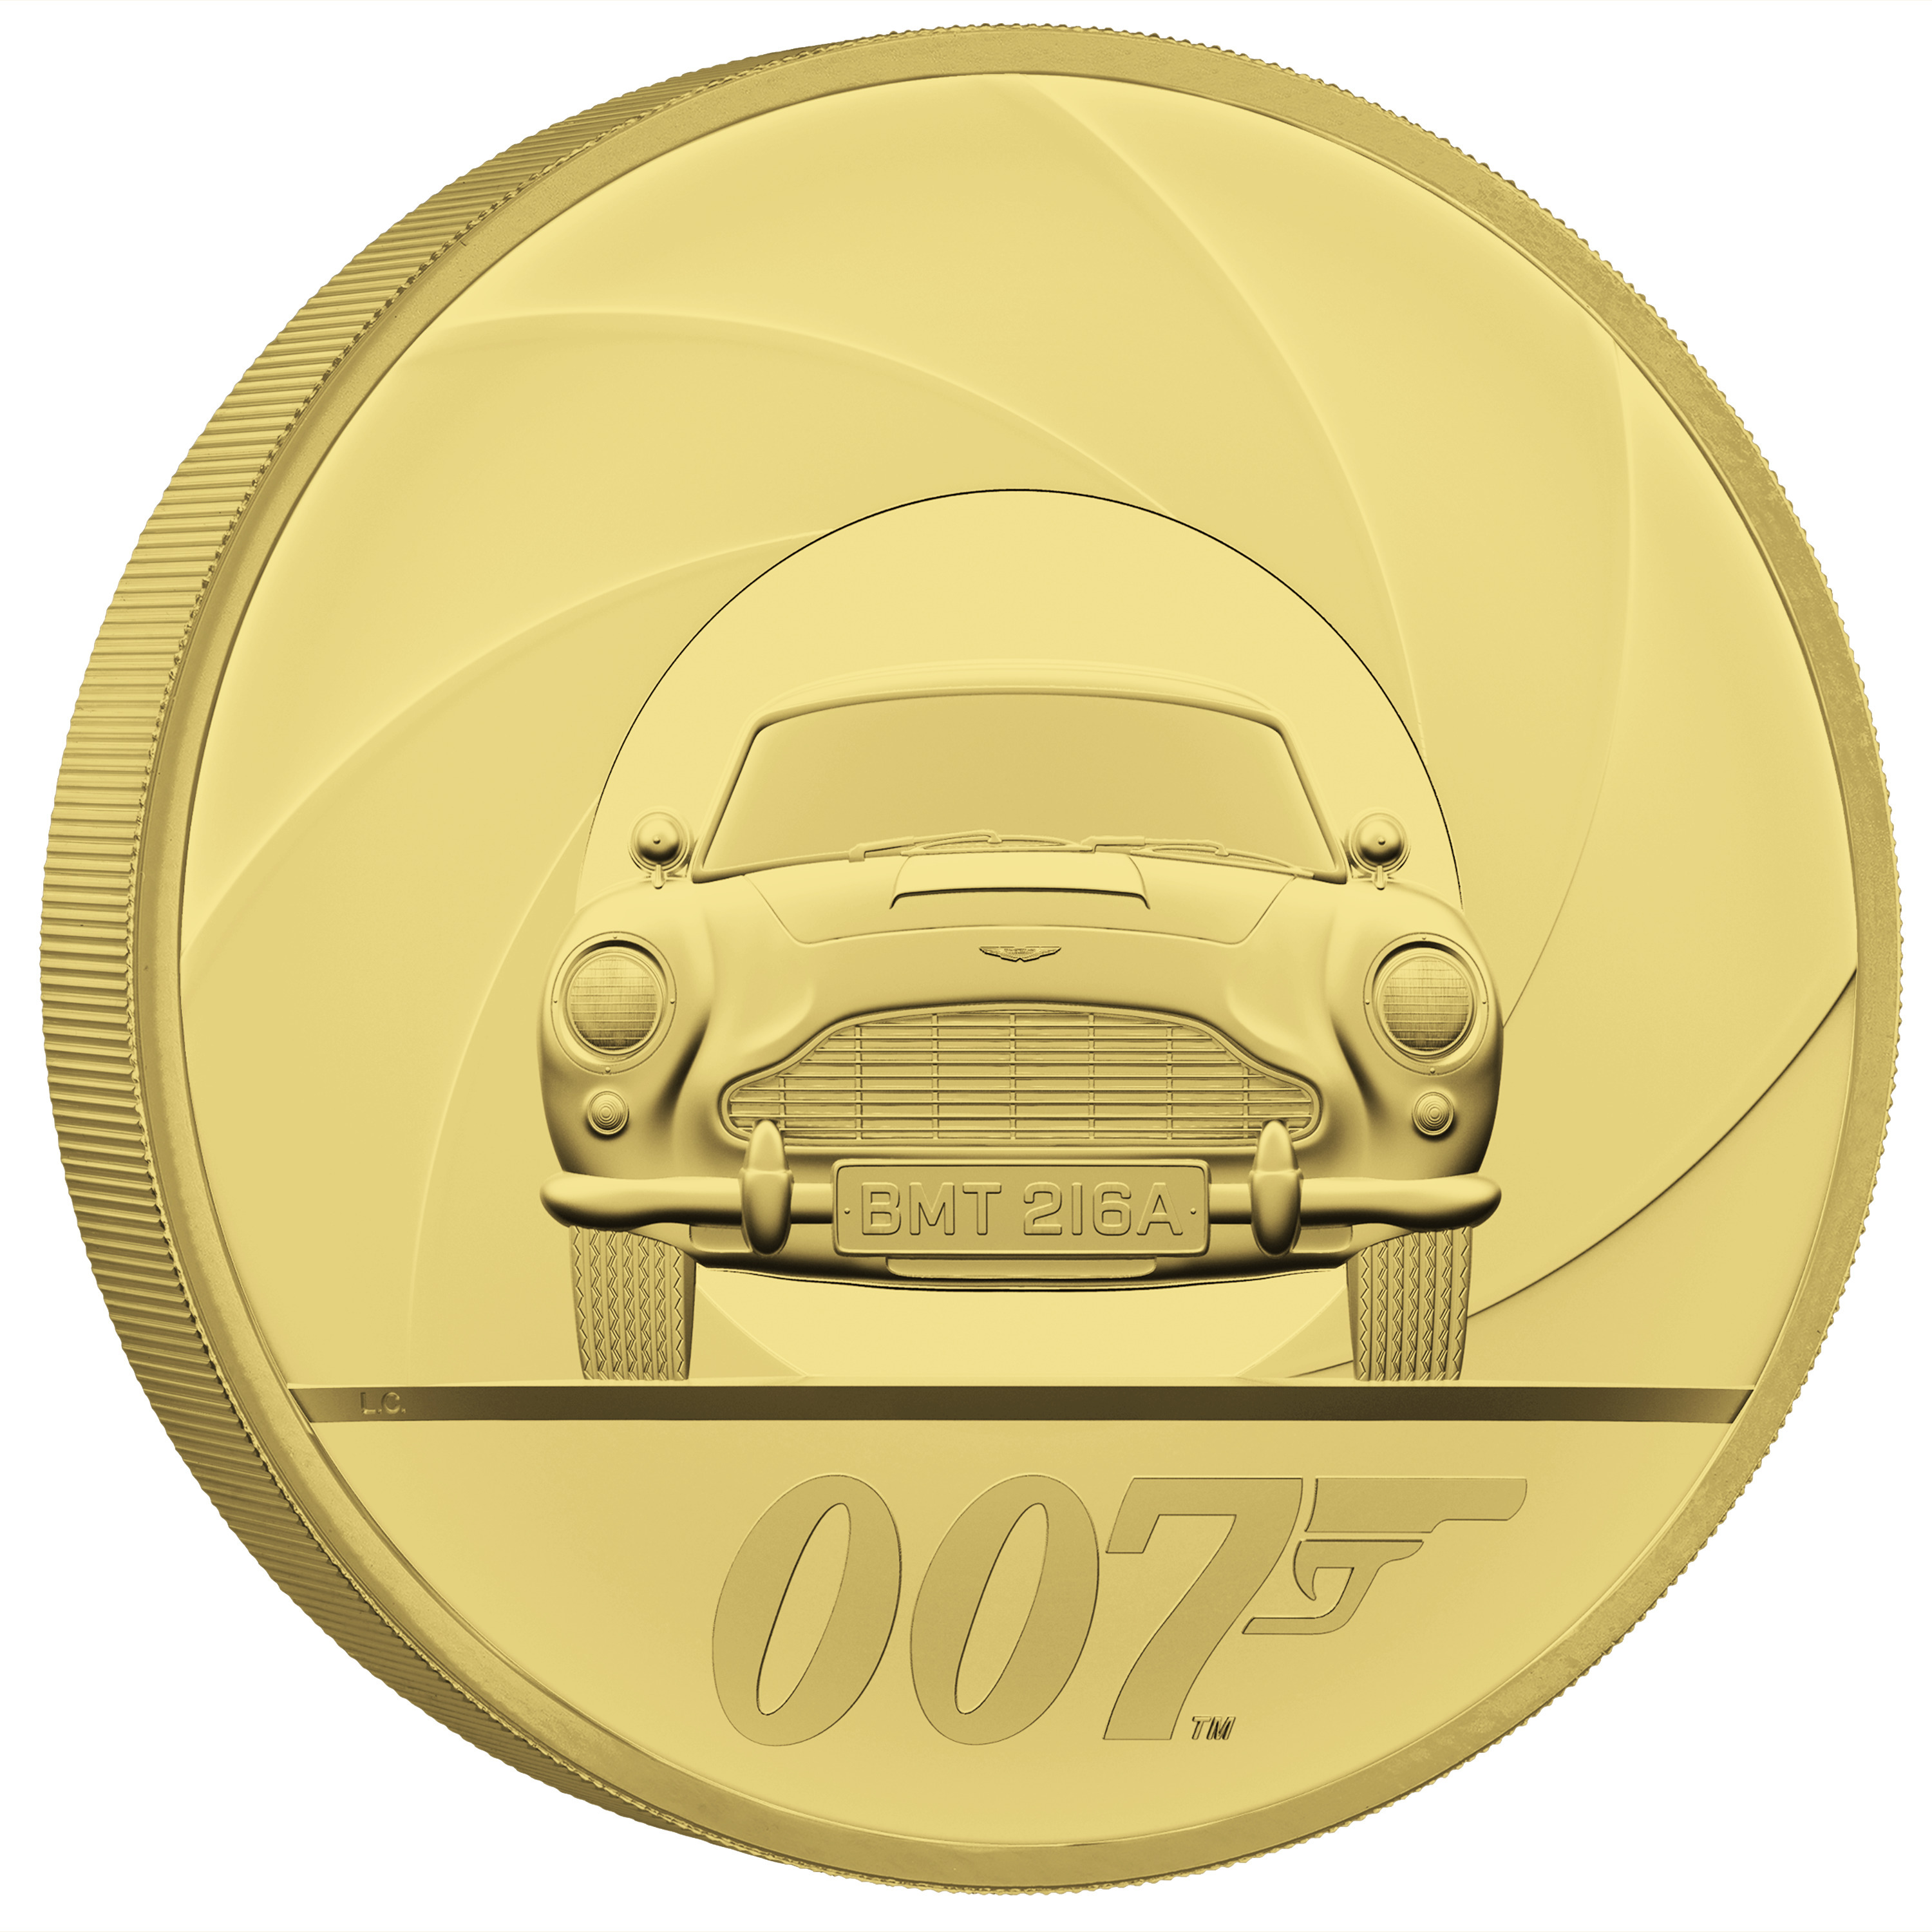 発行数が 世界限定1枚 の7キロ金貨も発行 007 ジェームズ ボンド 公式記念コイン が登場 泰星コイン株式会社のプレスリリース